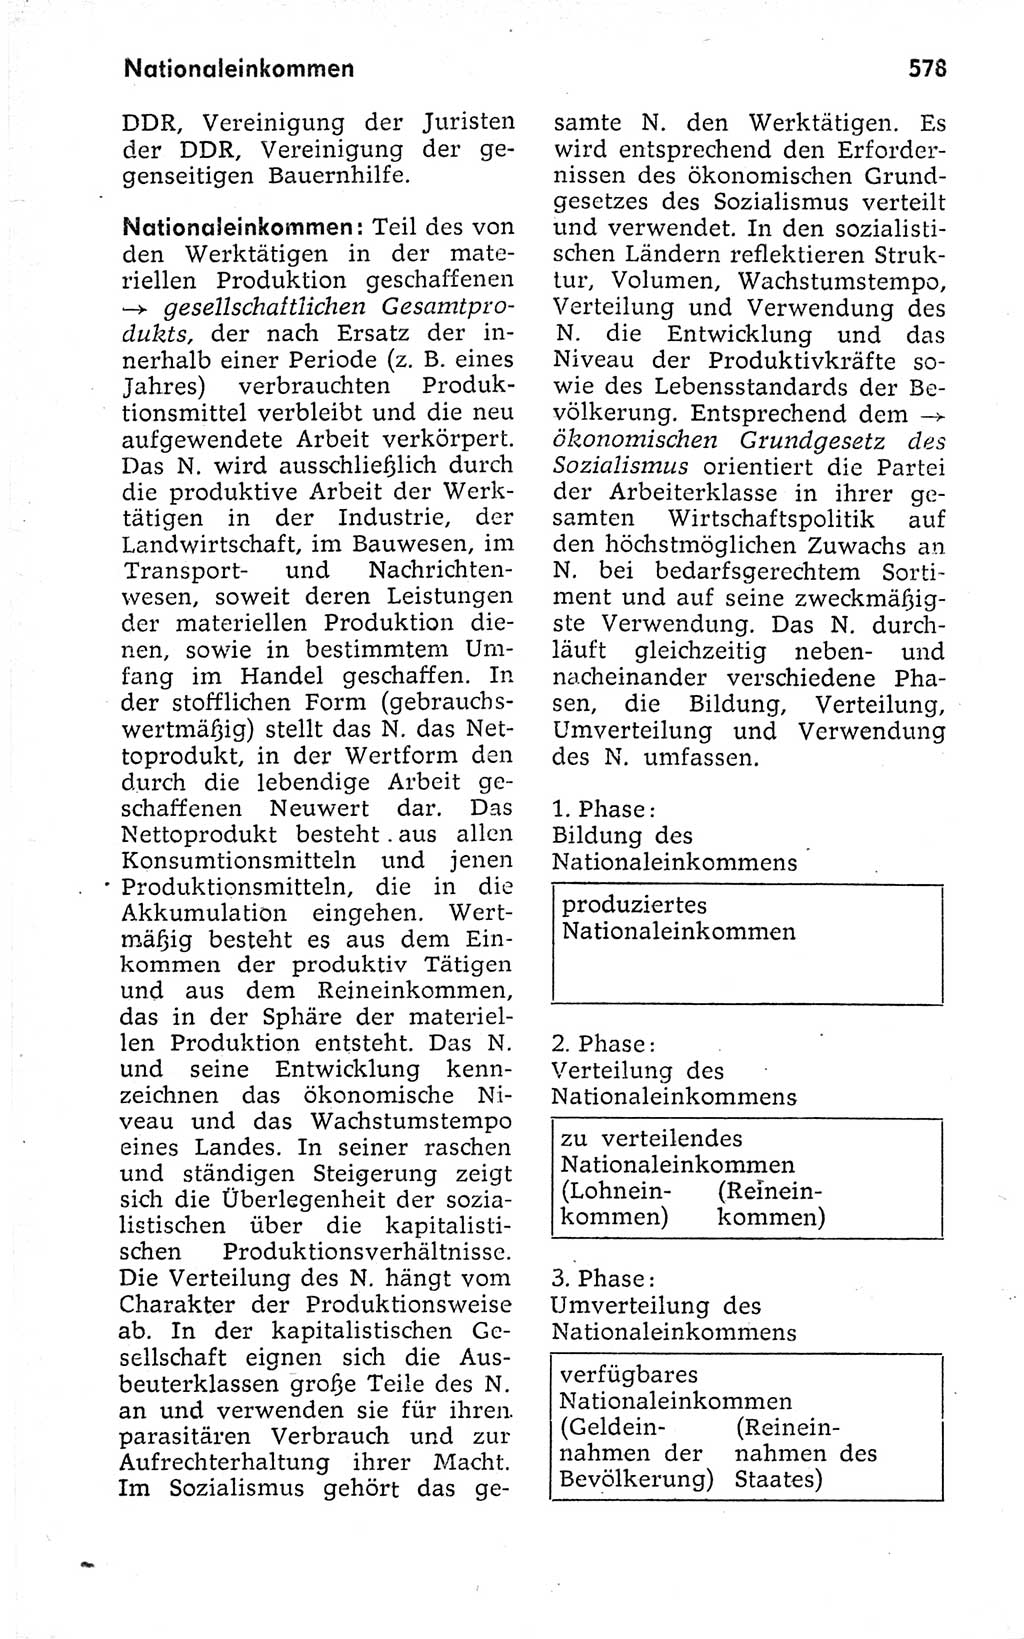 Kleines politisches Wörterbuch [Deutsche Demokratische Republik (DDR)] 1973, Seite 578 (Kl. pol. Wb. DDR 1973, S. 578)